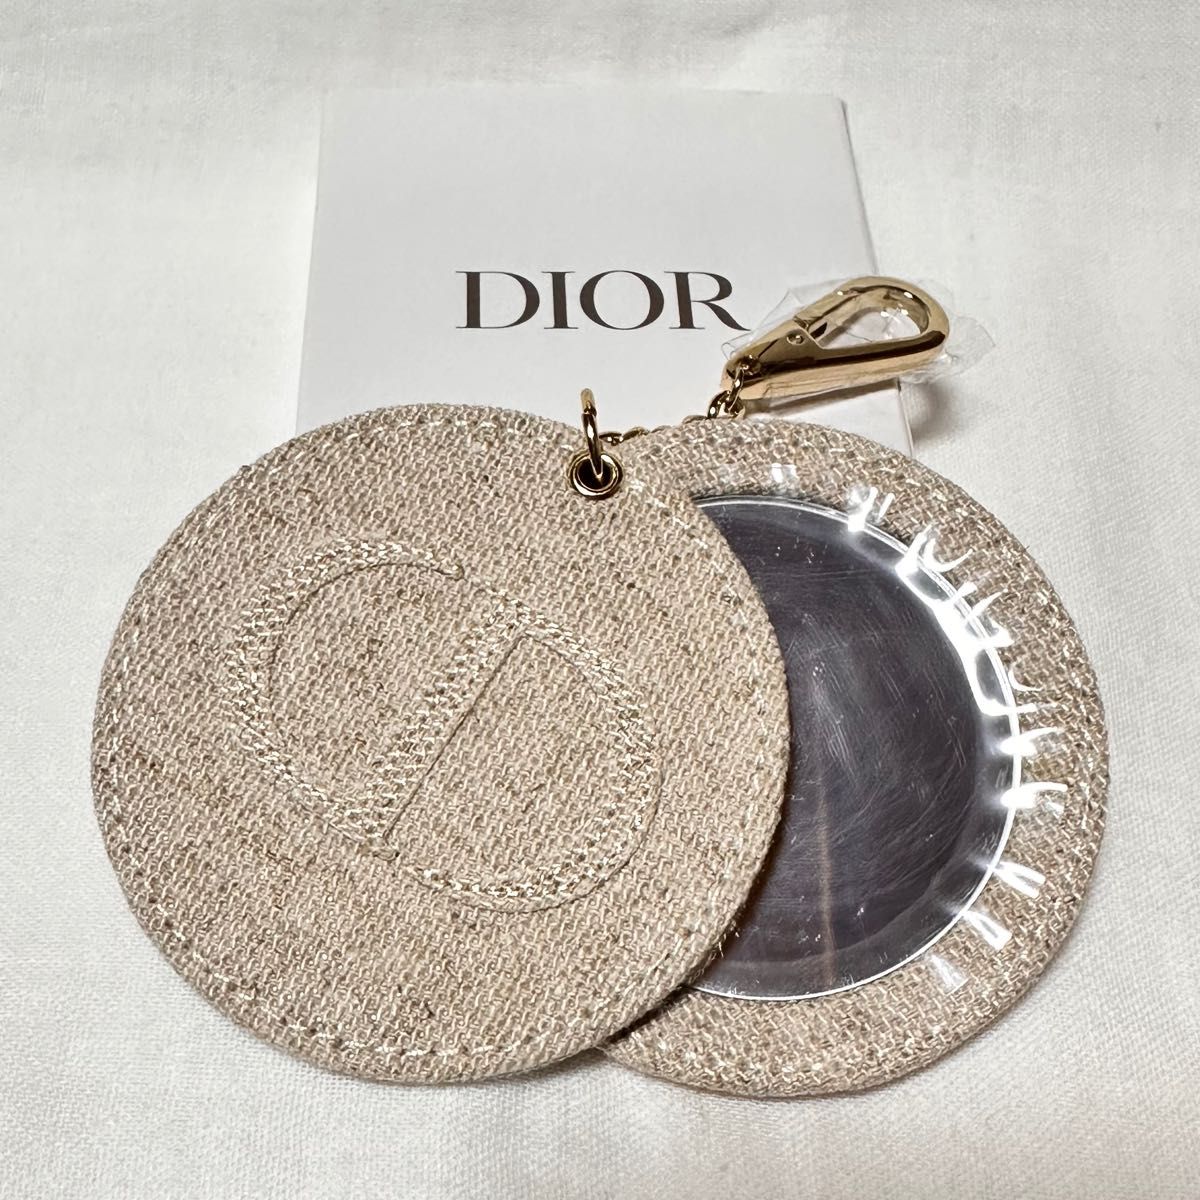 Christian Dior ディオール ノベルティ ミラー チャーム キーホルダー 新品未使用♪